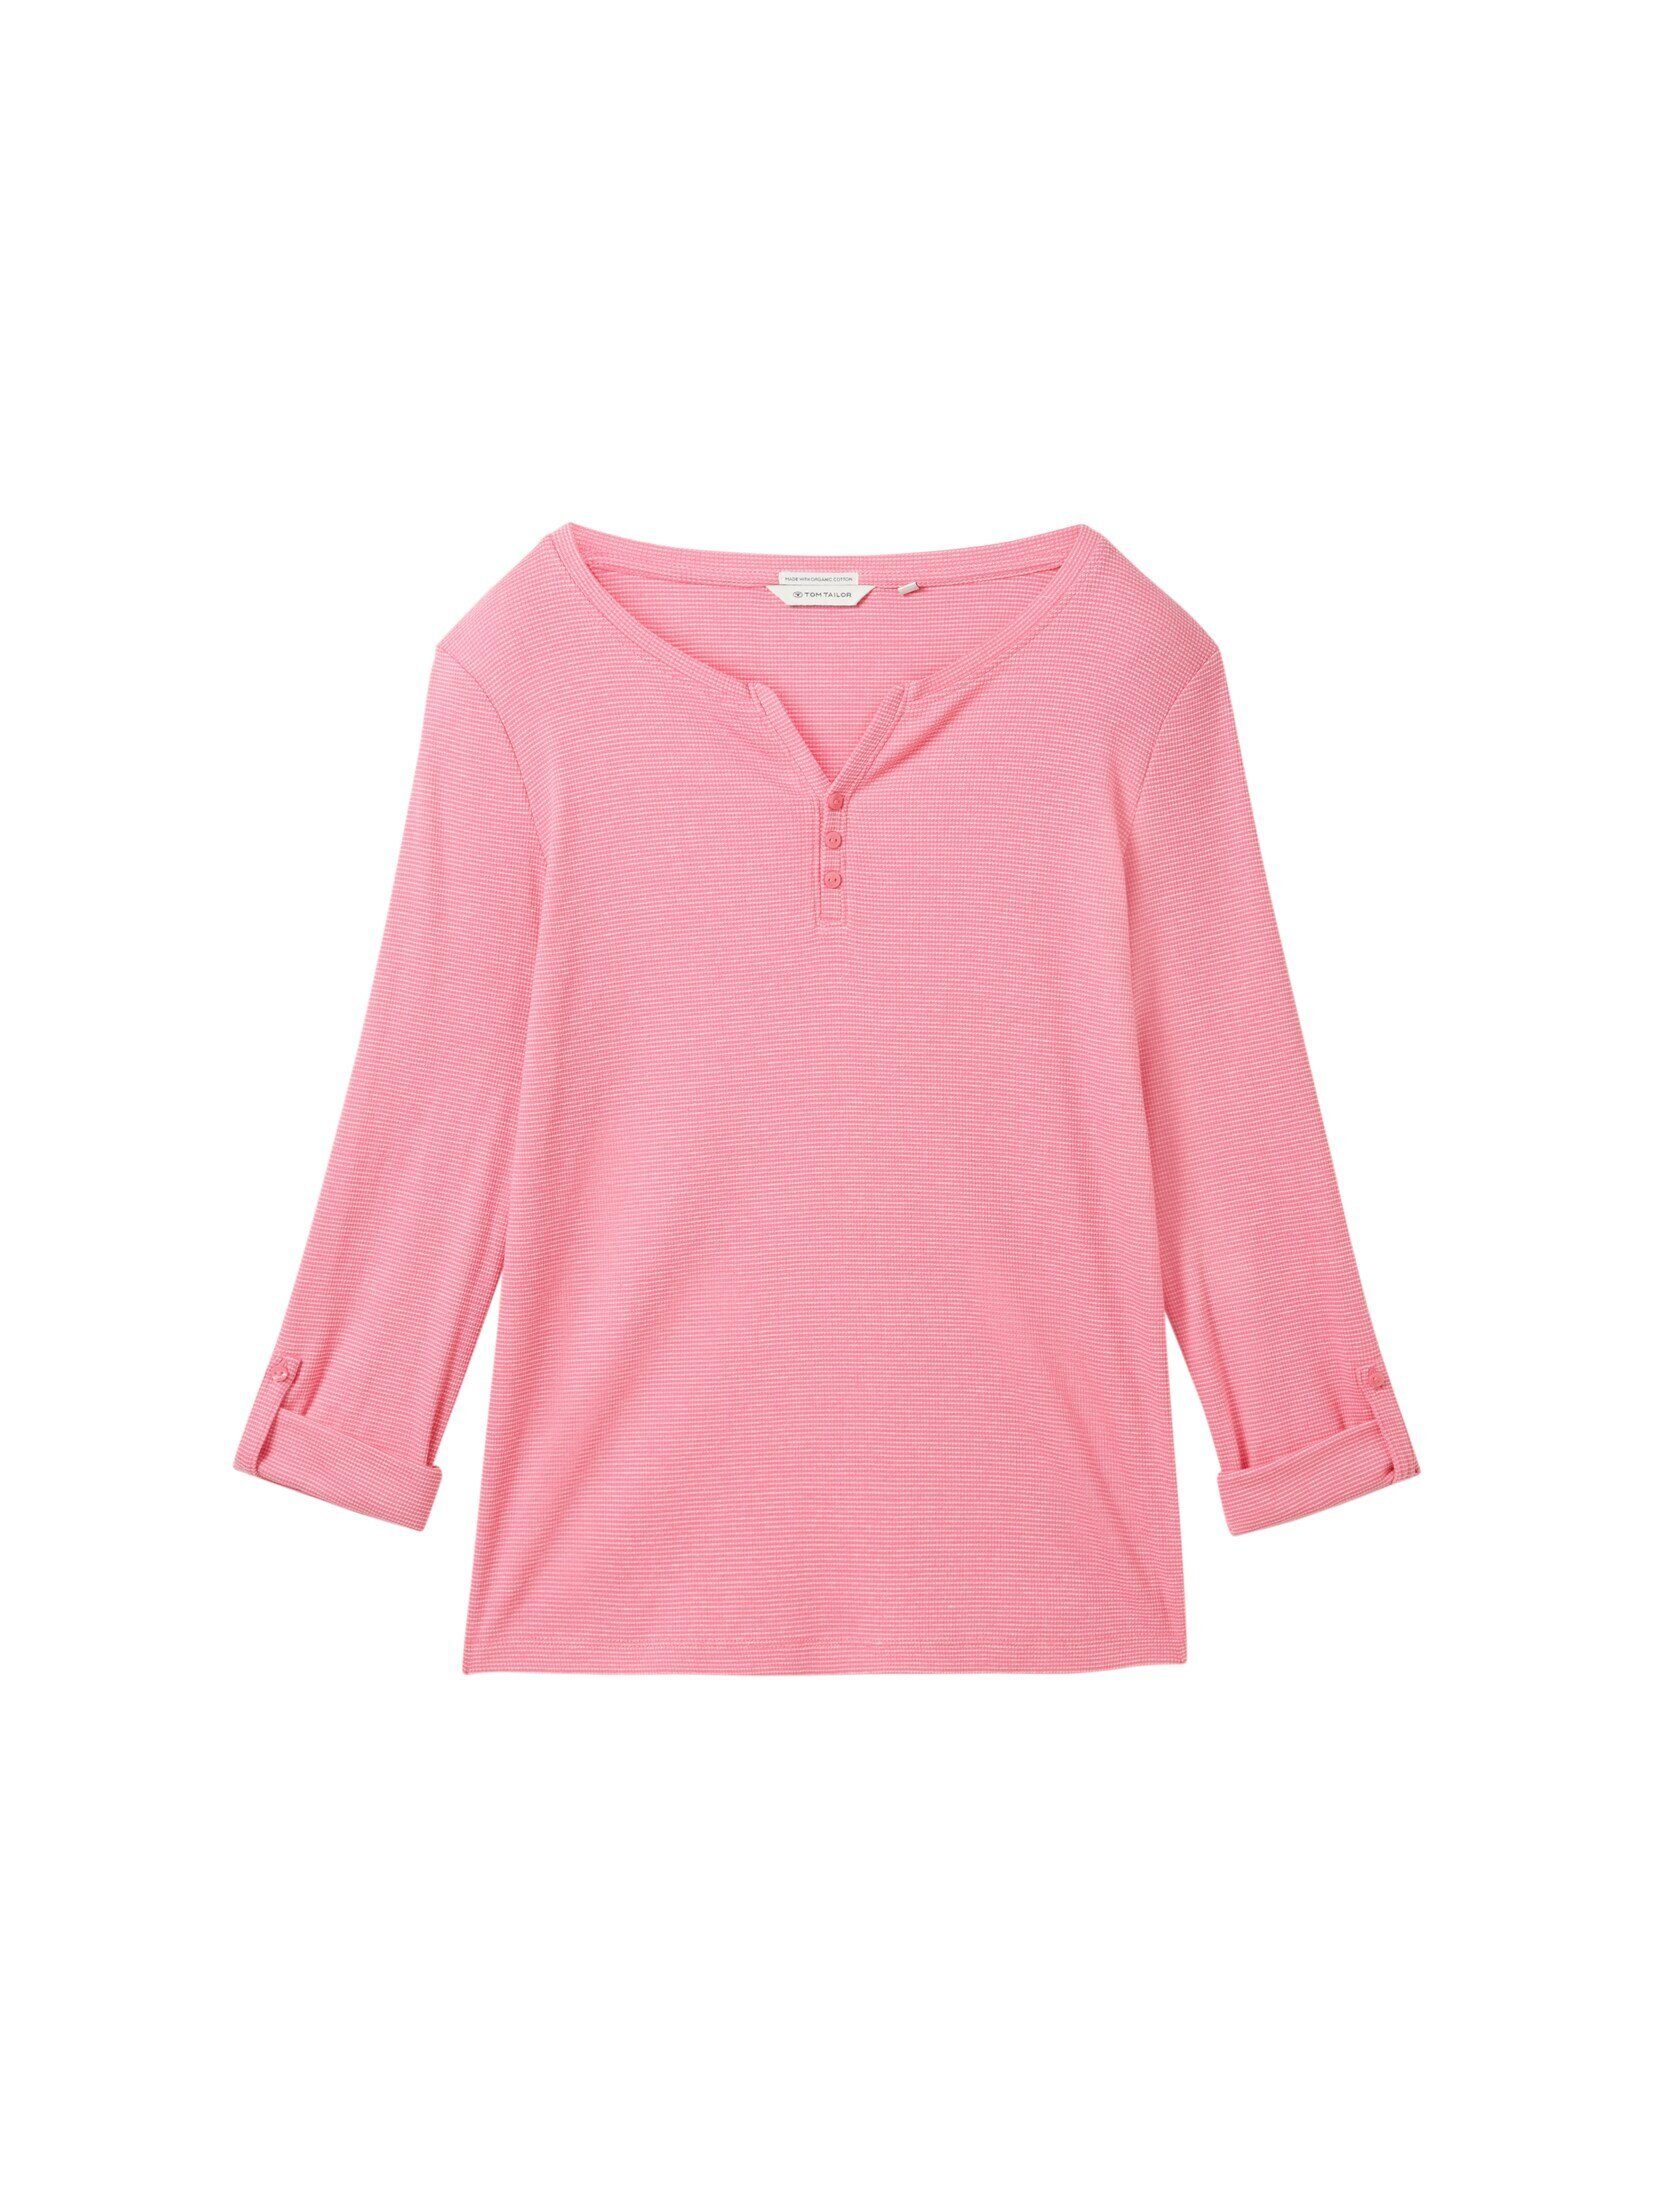 mit TAILOR stripe offwhite Langarmshirt Bio-Baumwolle pink ck T-Shirt TOM